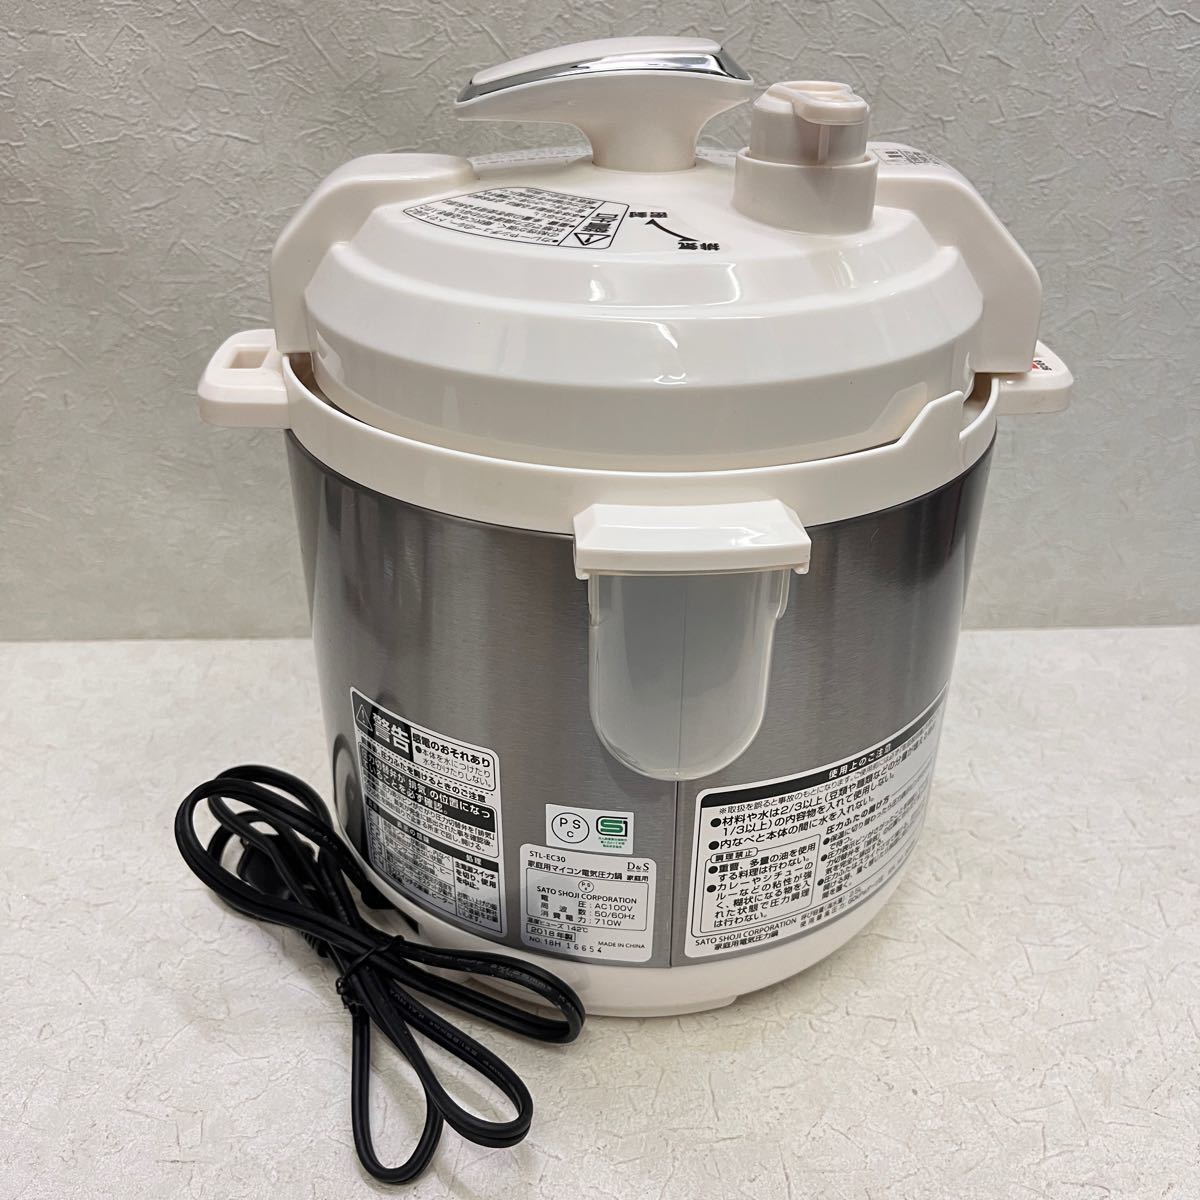 D&S 家庭用マイコン電気圧力鍋 圧力鍋 STL-EC30 2.5L 炊飯器18年製